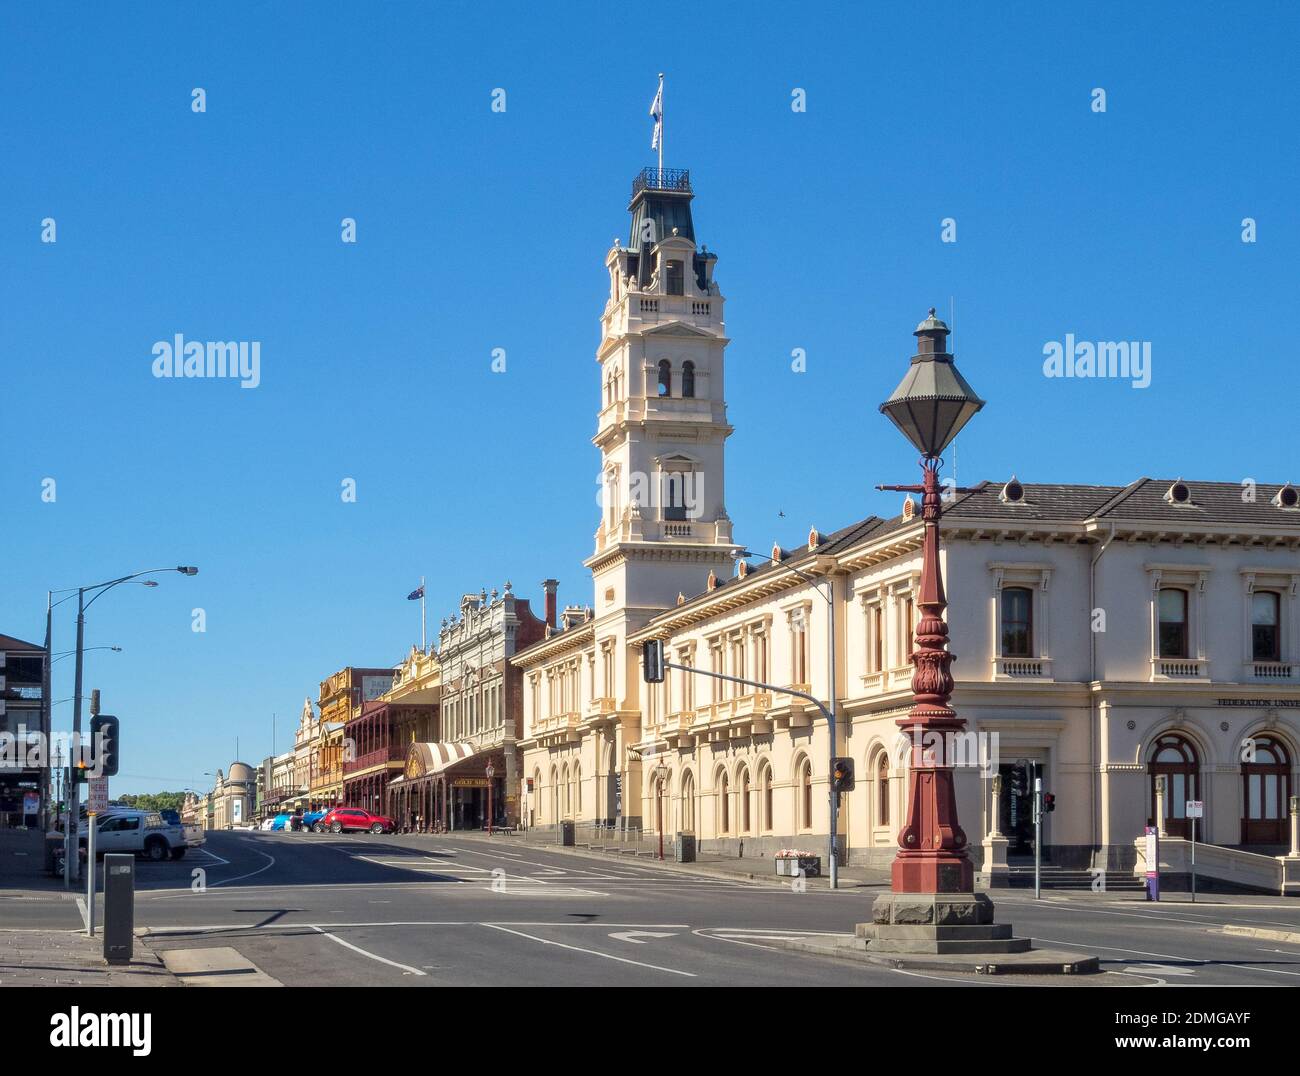 An der Kreuzung der Lydiard und Sturt Straßen im historischen Stadtzentrum - Ballarat, Victoria, Australien Stockfoto